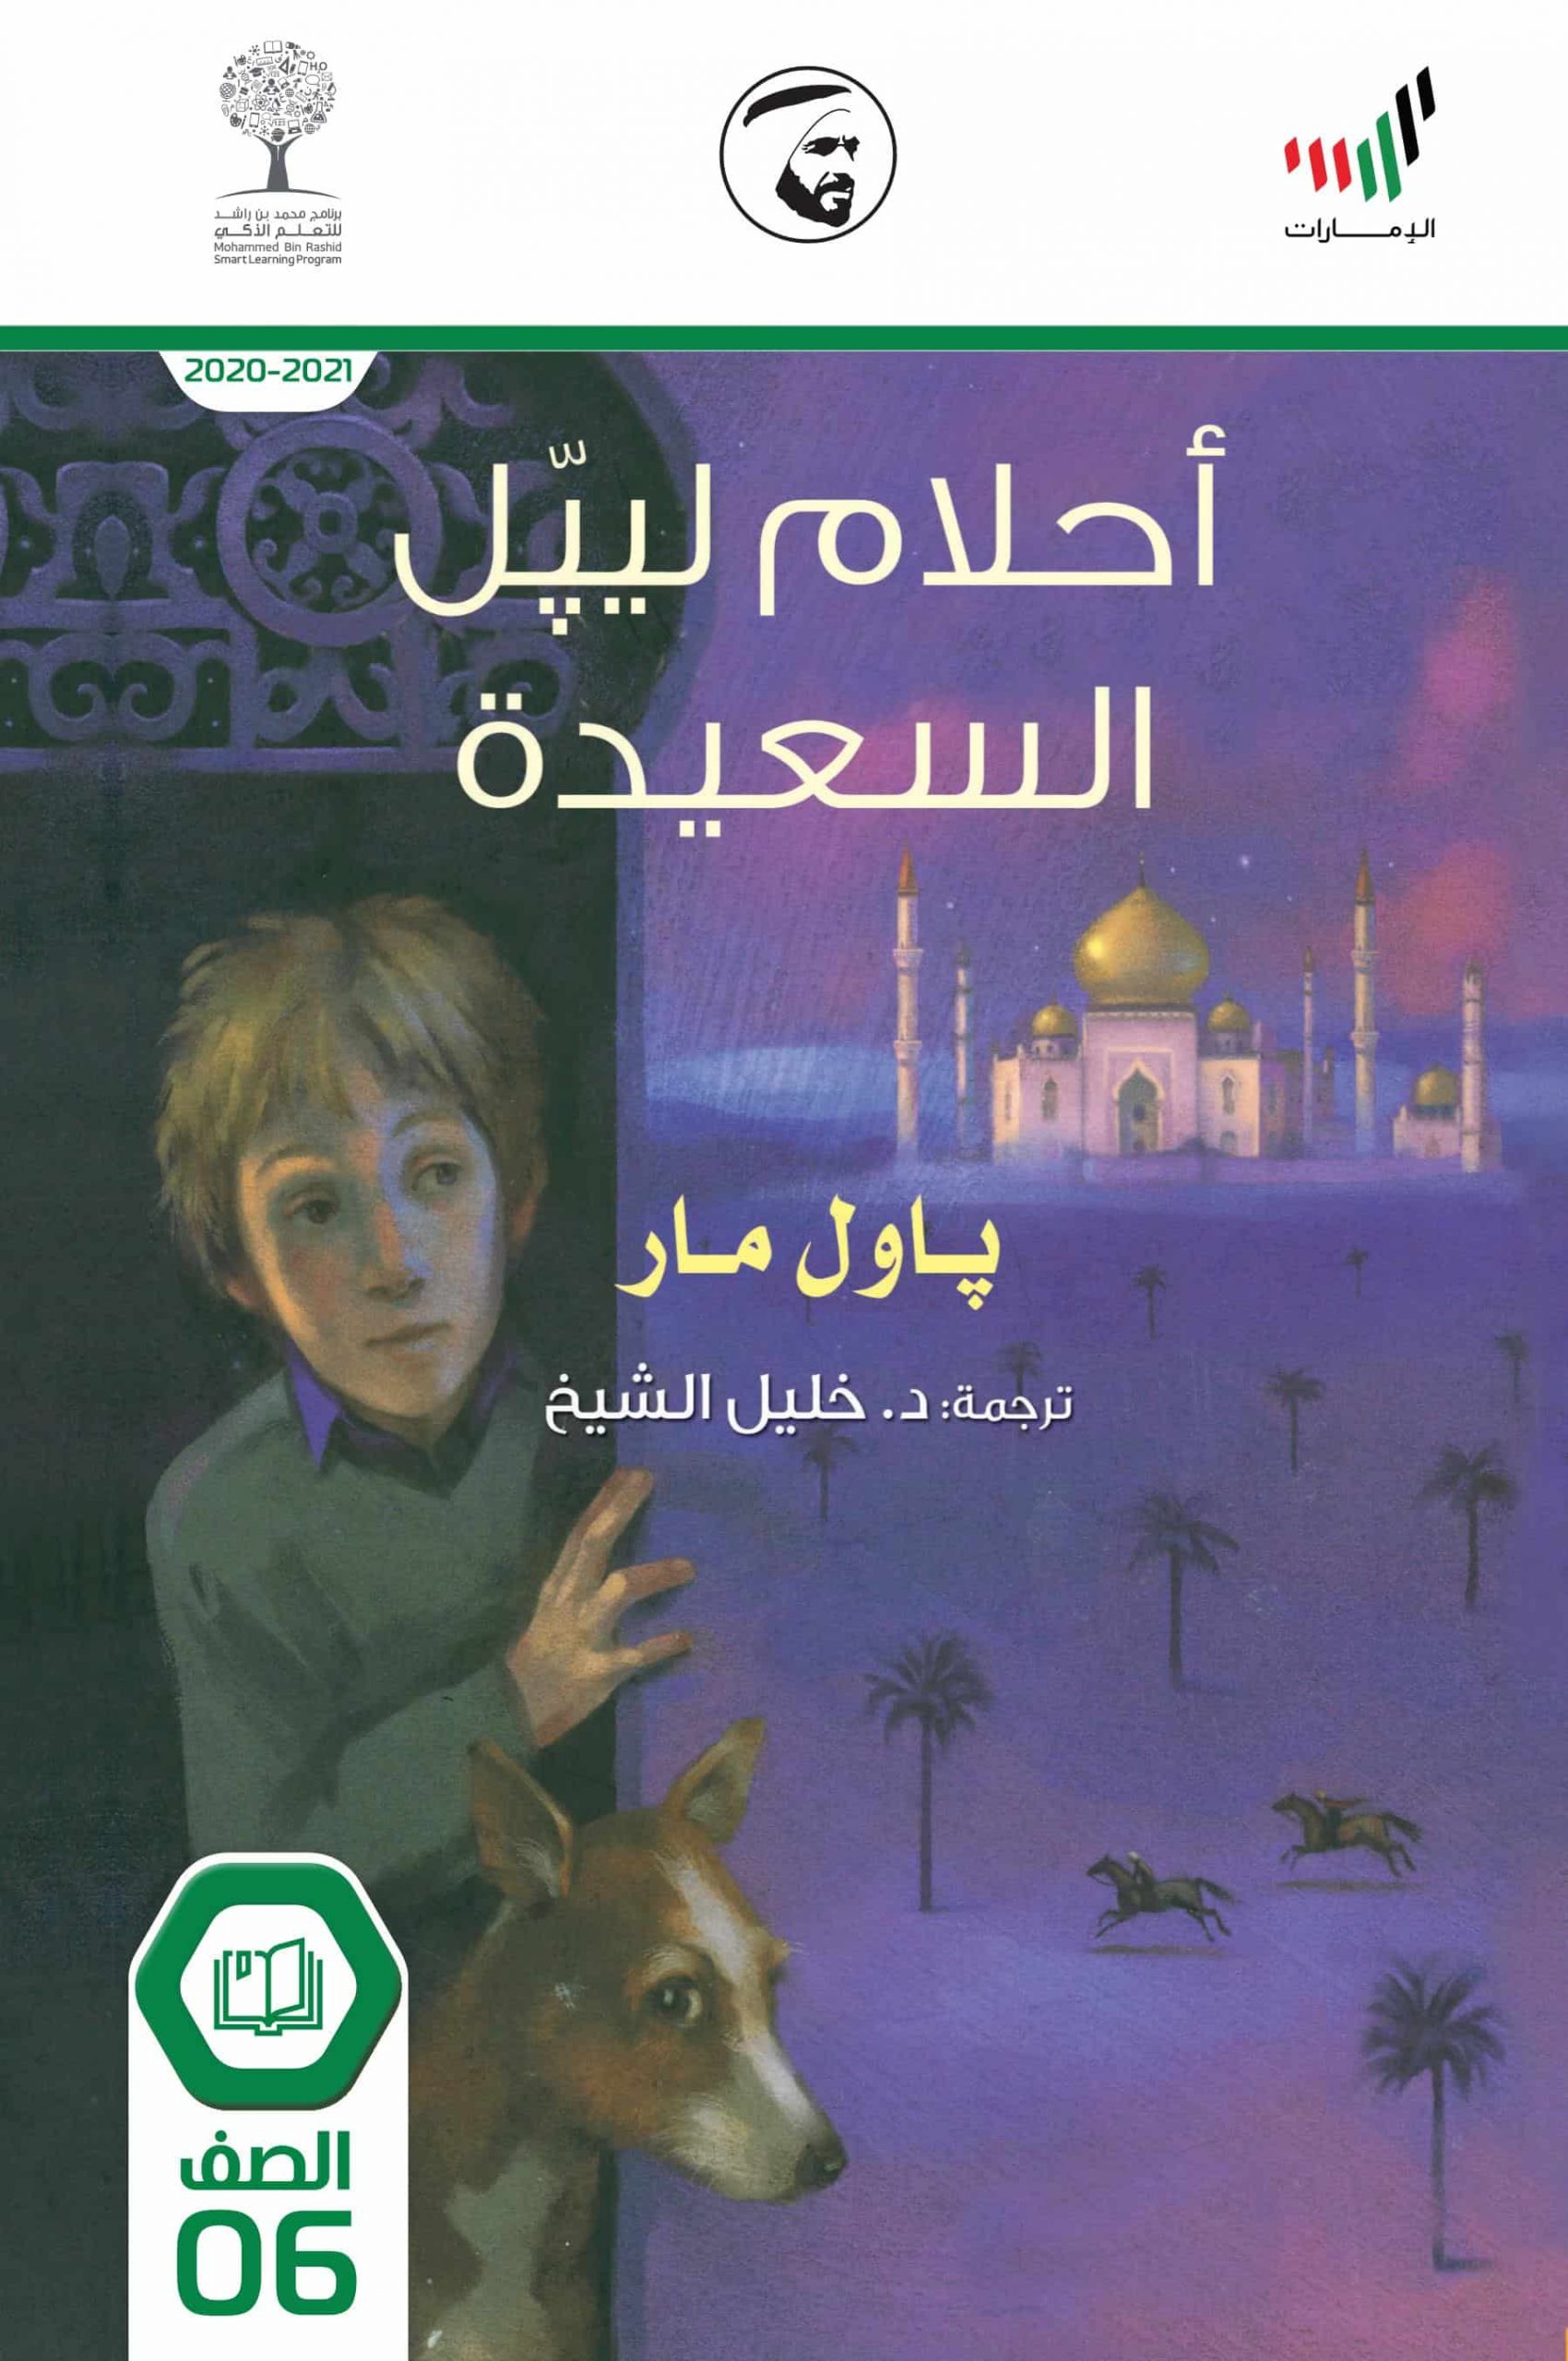 قصة أحلام ليبل السعيدة 2020-2021 الصف السادس مادة اللغة العربية - بوربوينت